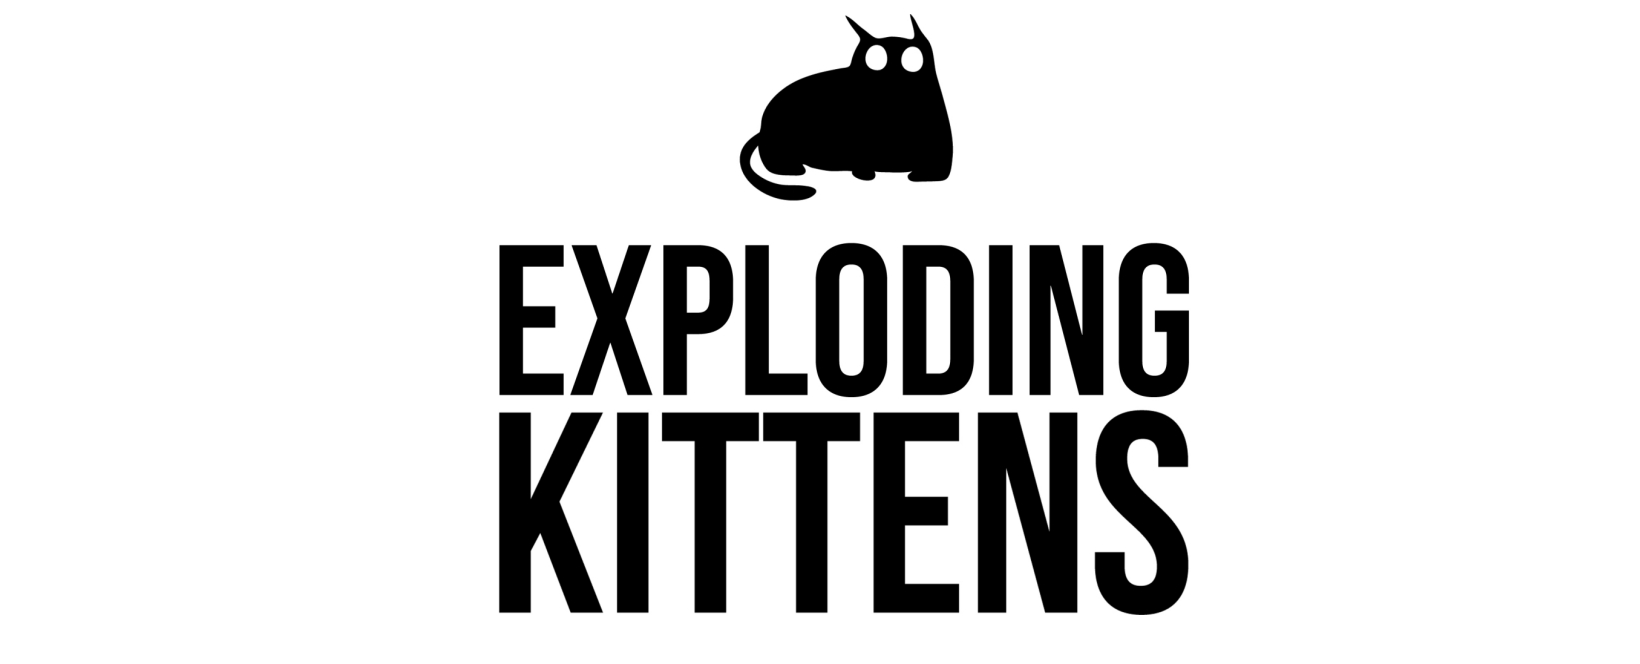 Exploding Kittens Review 2023